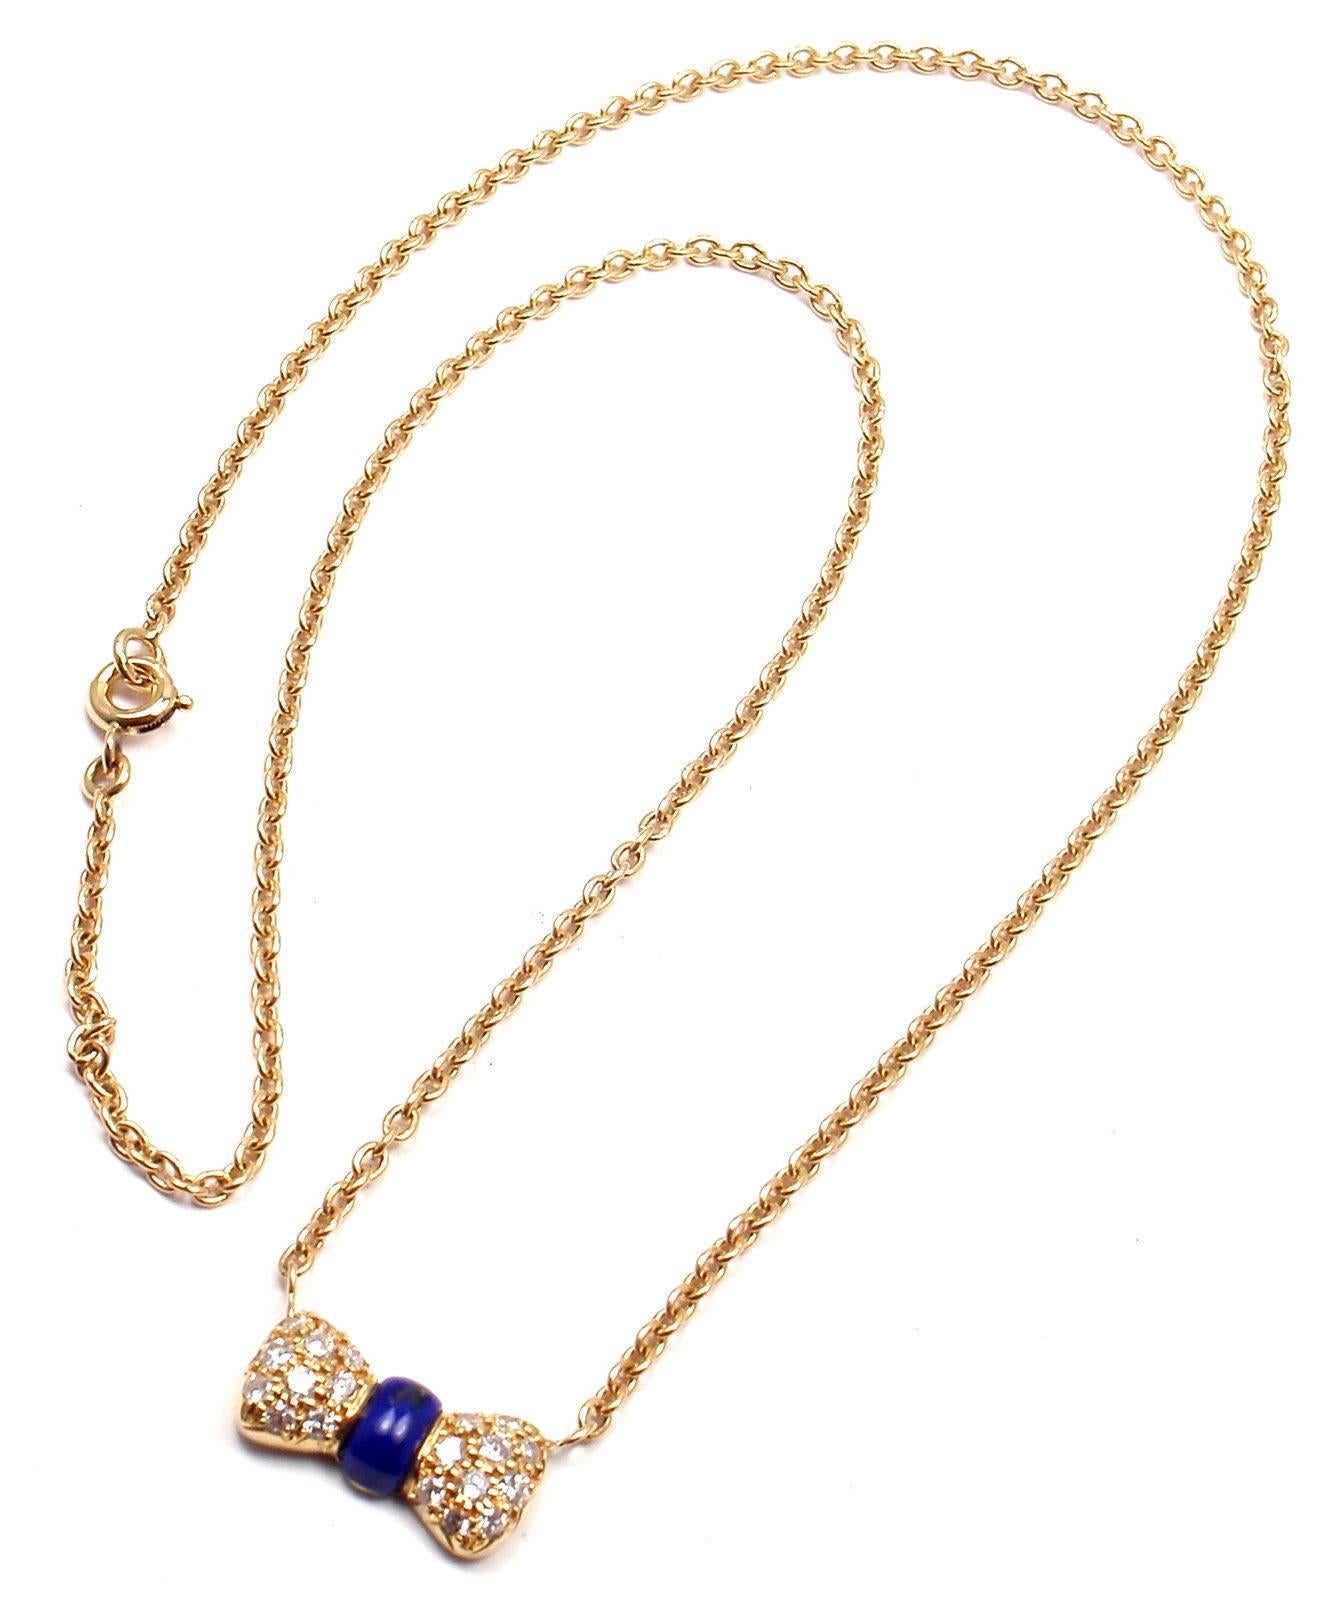 collier en or jaune 18k avec nœud en lapis-lazuli et diamants de Van Cleef & Arpels. Avec 20 diamants VVS1 clarté, couleur G poids total .10ct  

Détails : 
Longueur du collier : 15,5''
Pendentif : 15mm x 8mm
Poids : 5,5 grammes
Poinçons estampillés